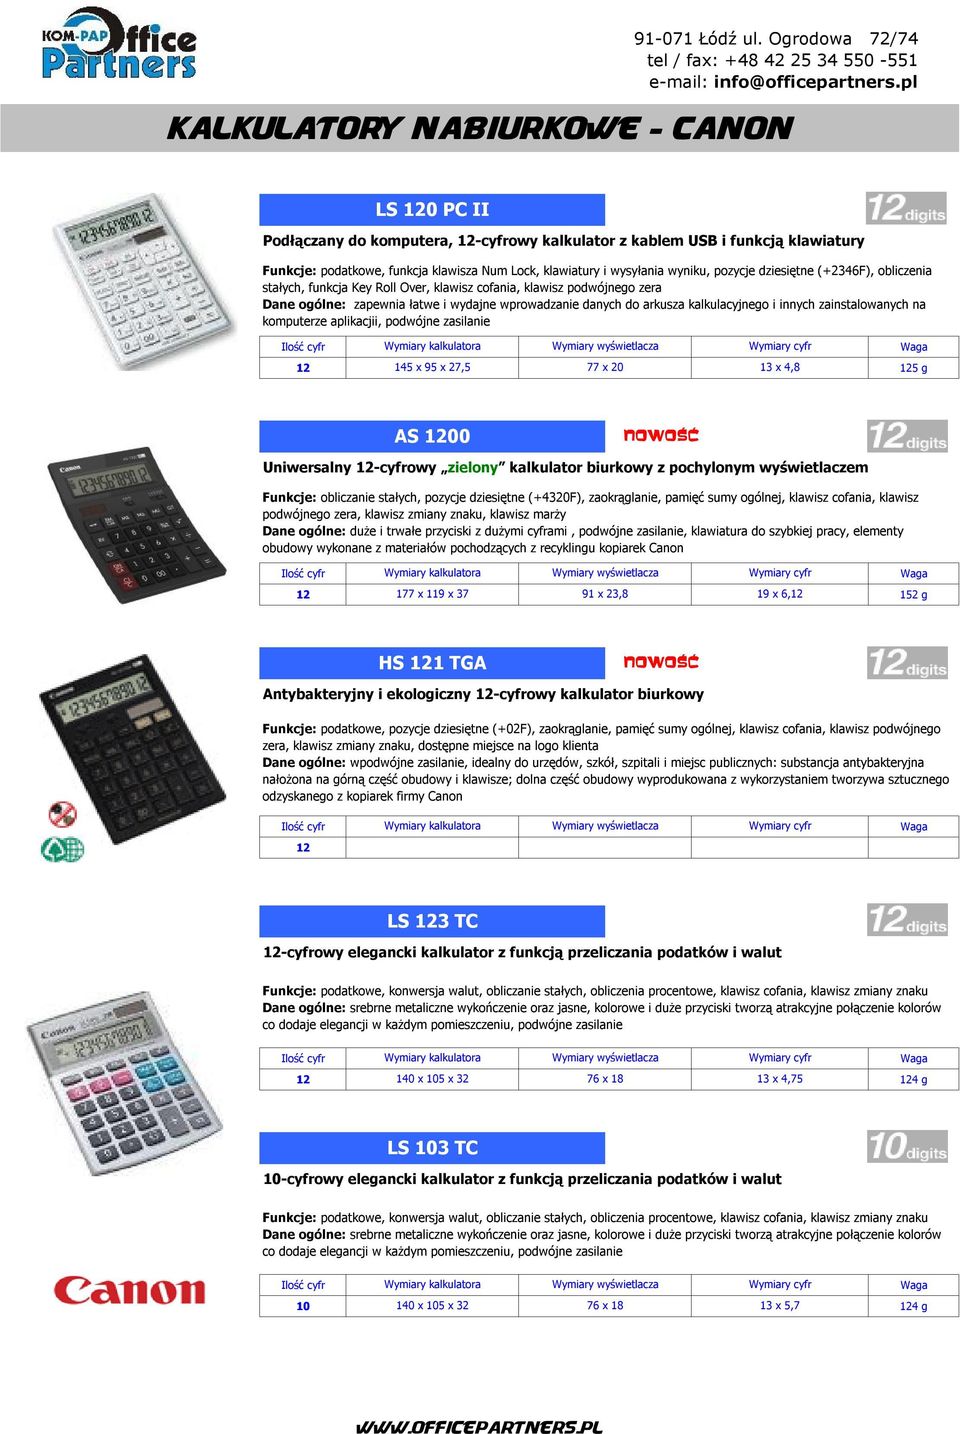 kalkulacyjnego i innych zainstalowanych na komputerze aplikacjii, podwójne zasilanie 12 145 x 95 x 27,5 77 x 20 13 x 4,8 125 g AS 1200 Uniwersalny 12-cyfrowy zielony kalkulator biurkowy z pochylonym